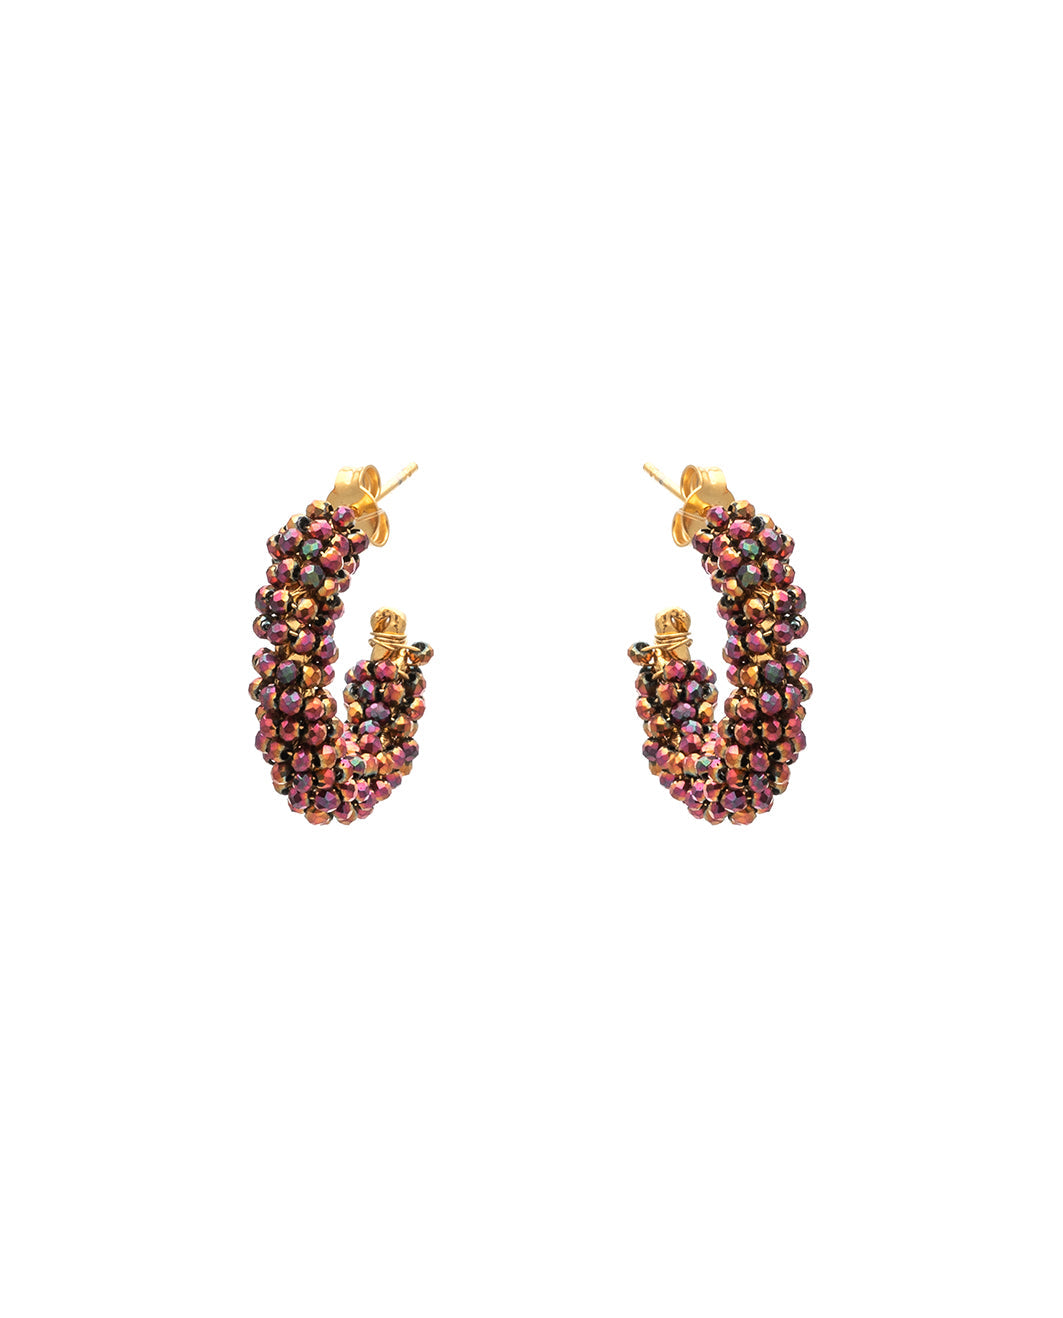 Bouboukaki earrings